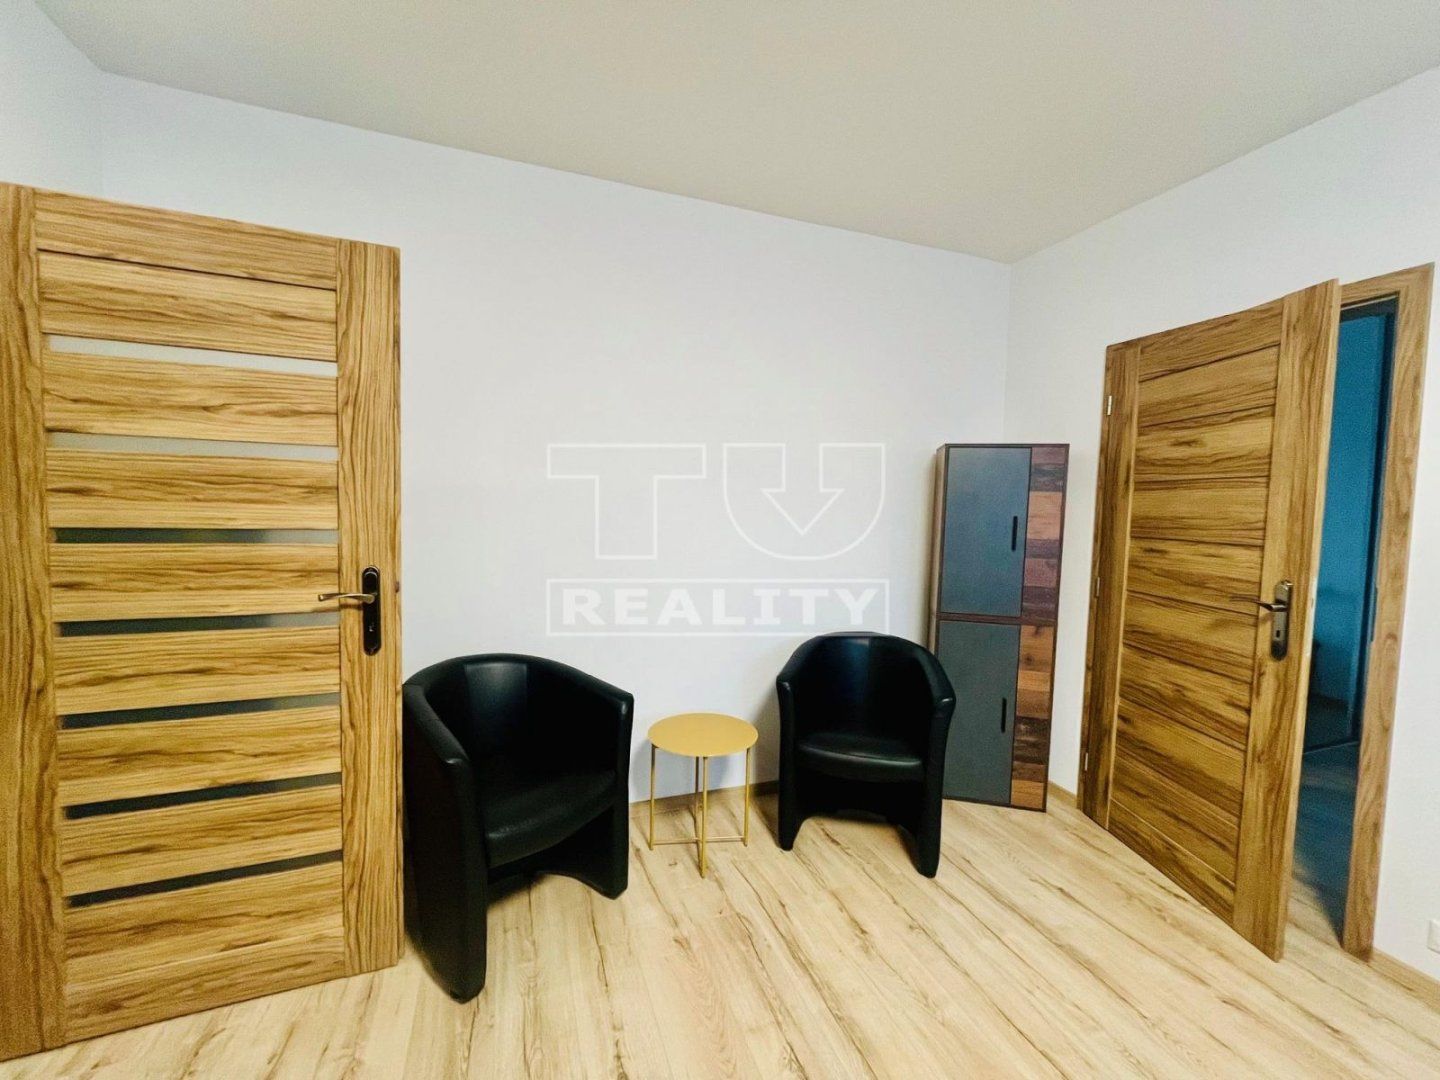 TUreality pripravuje najkrajší kompletne nanovo zrekonštruovaný 2-izbový byt o rozlohe 58 m2 v tesnej blízkosti rieky Váh - REZERVOVANÉ